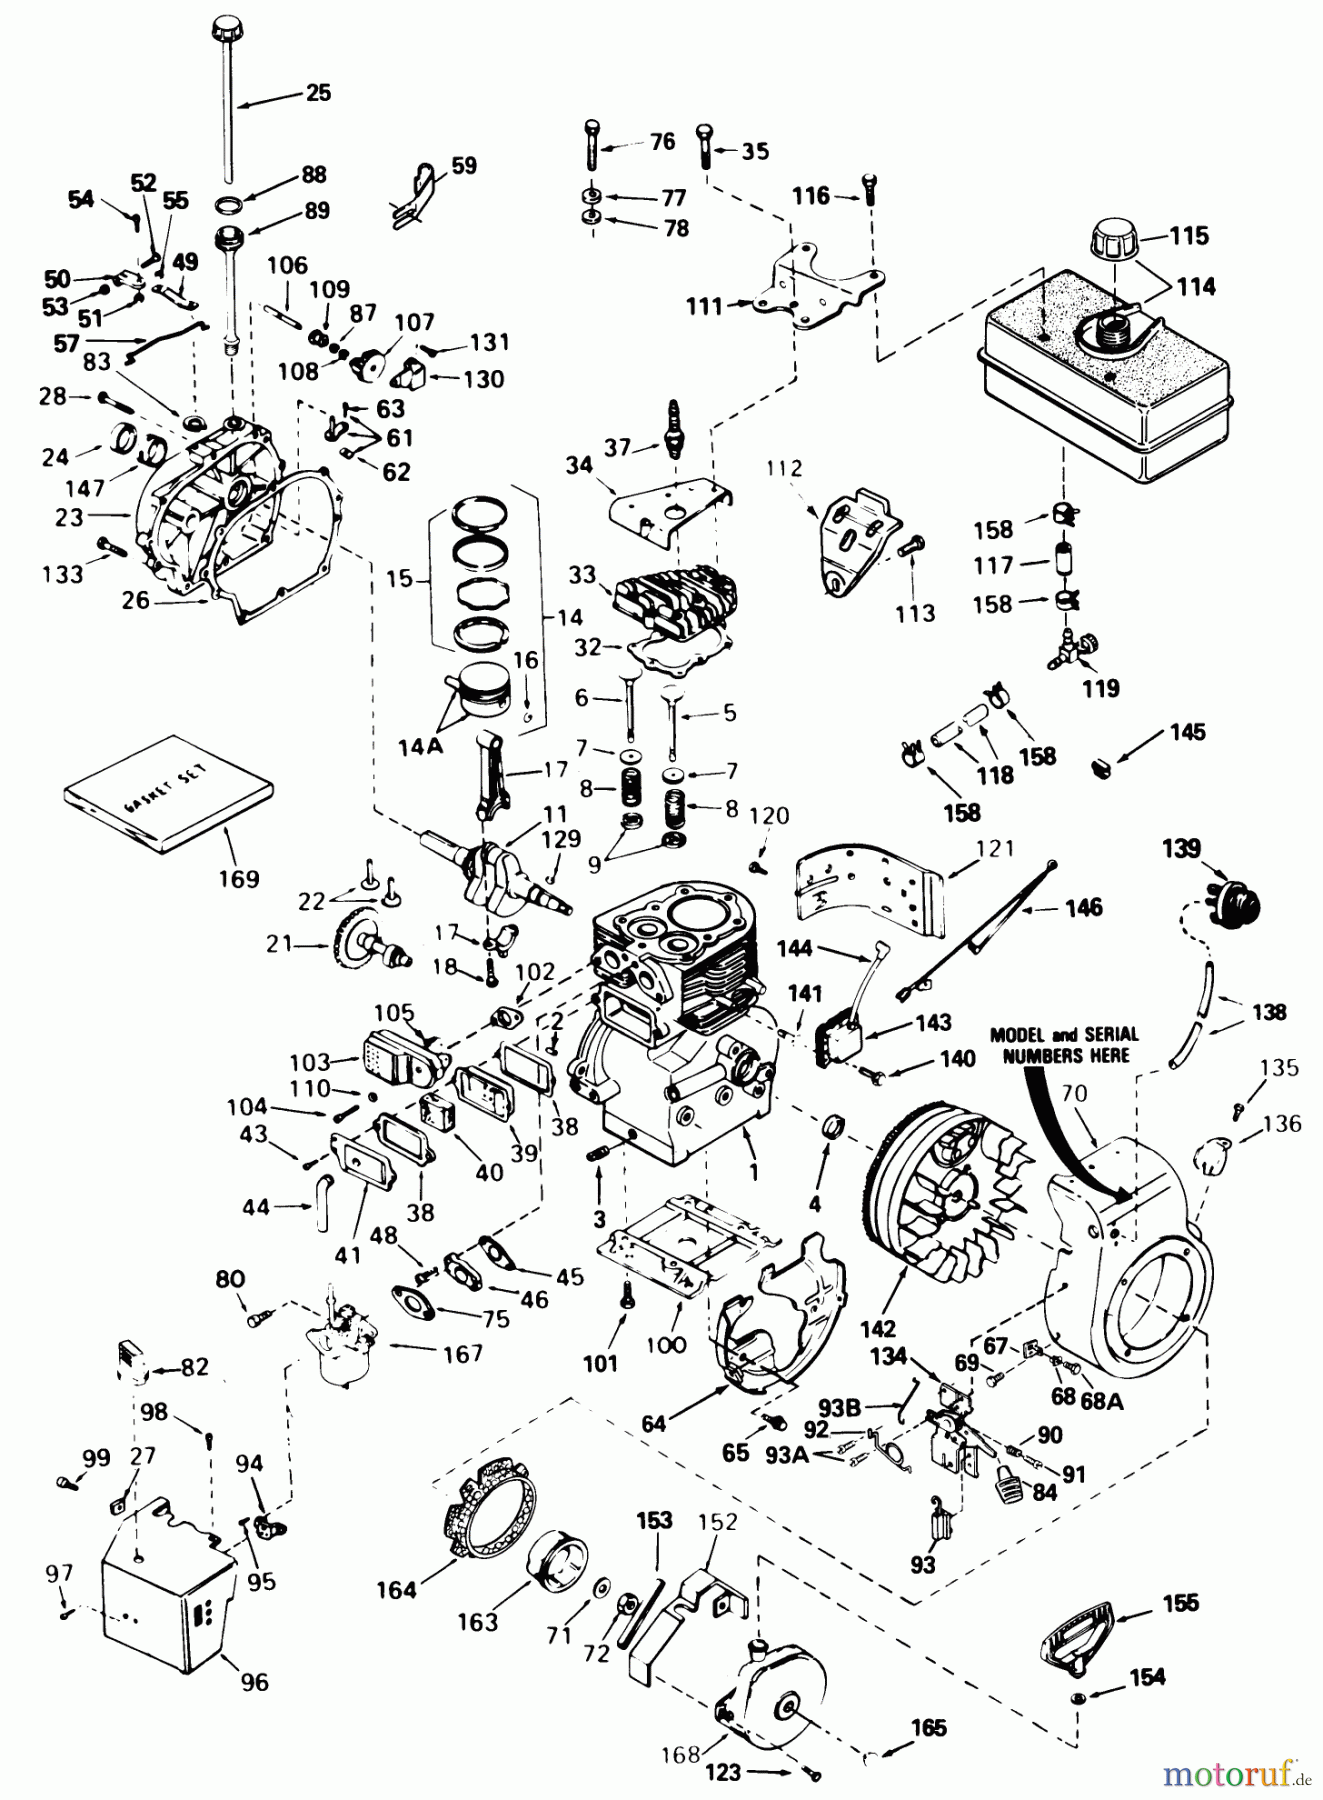  Toro Neu Snow Blowers/Snow Throwers Seite 1 38510 (624) - Toro 624 Power Shift Snowthrower, 1989 (9000001-9999999) ENGINE TECUMSEH MODEL NO. H60-75504W